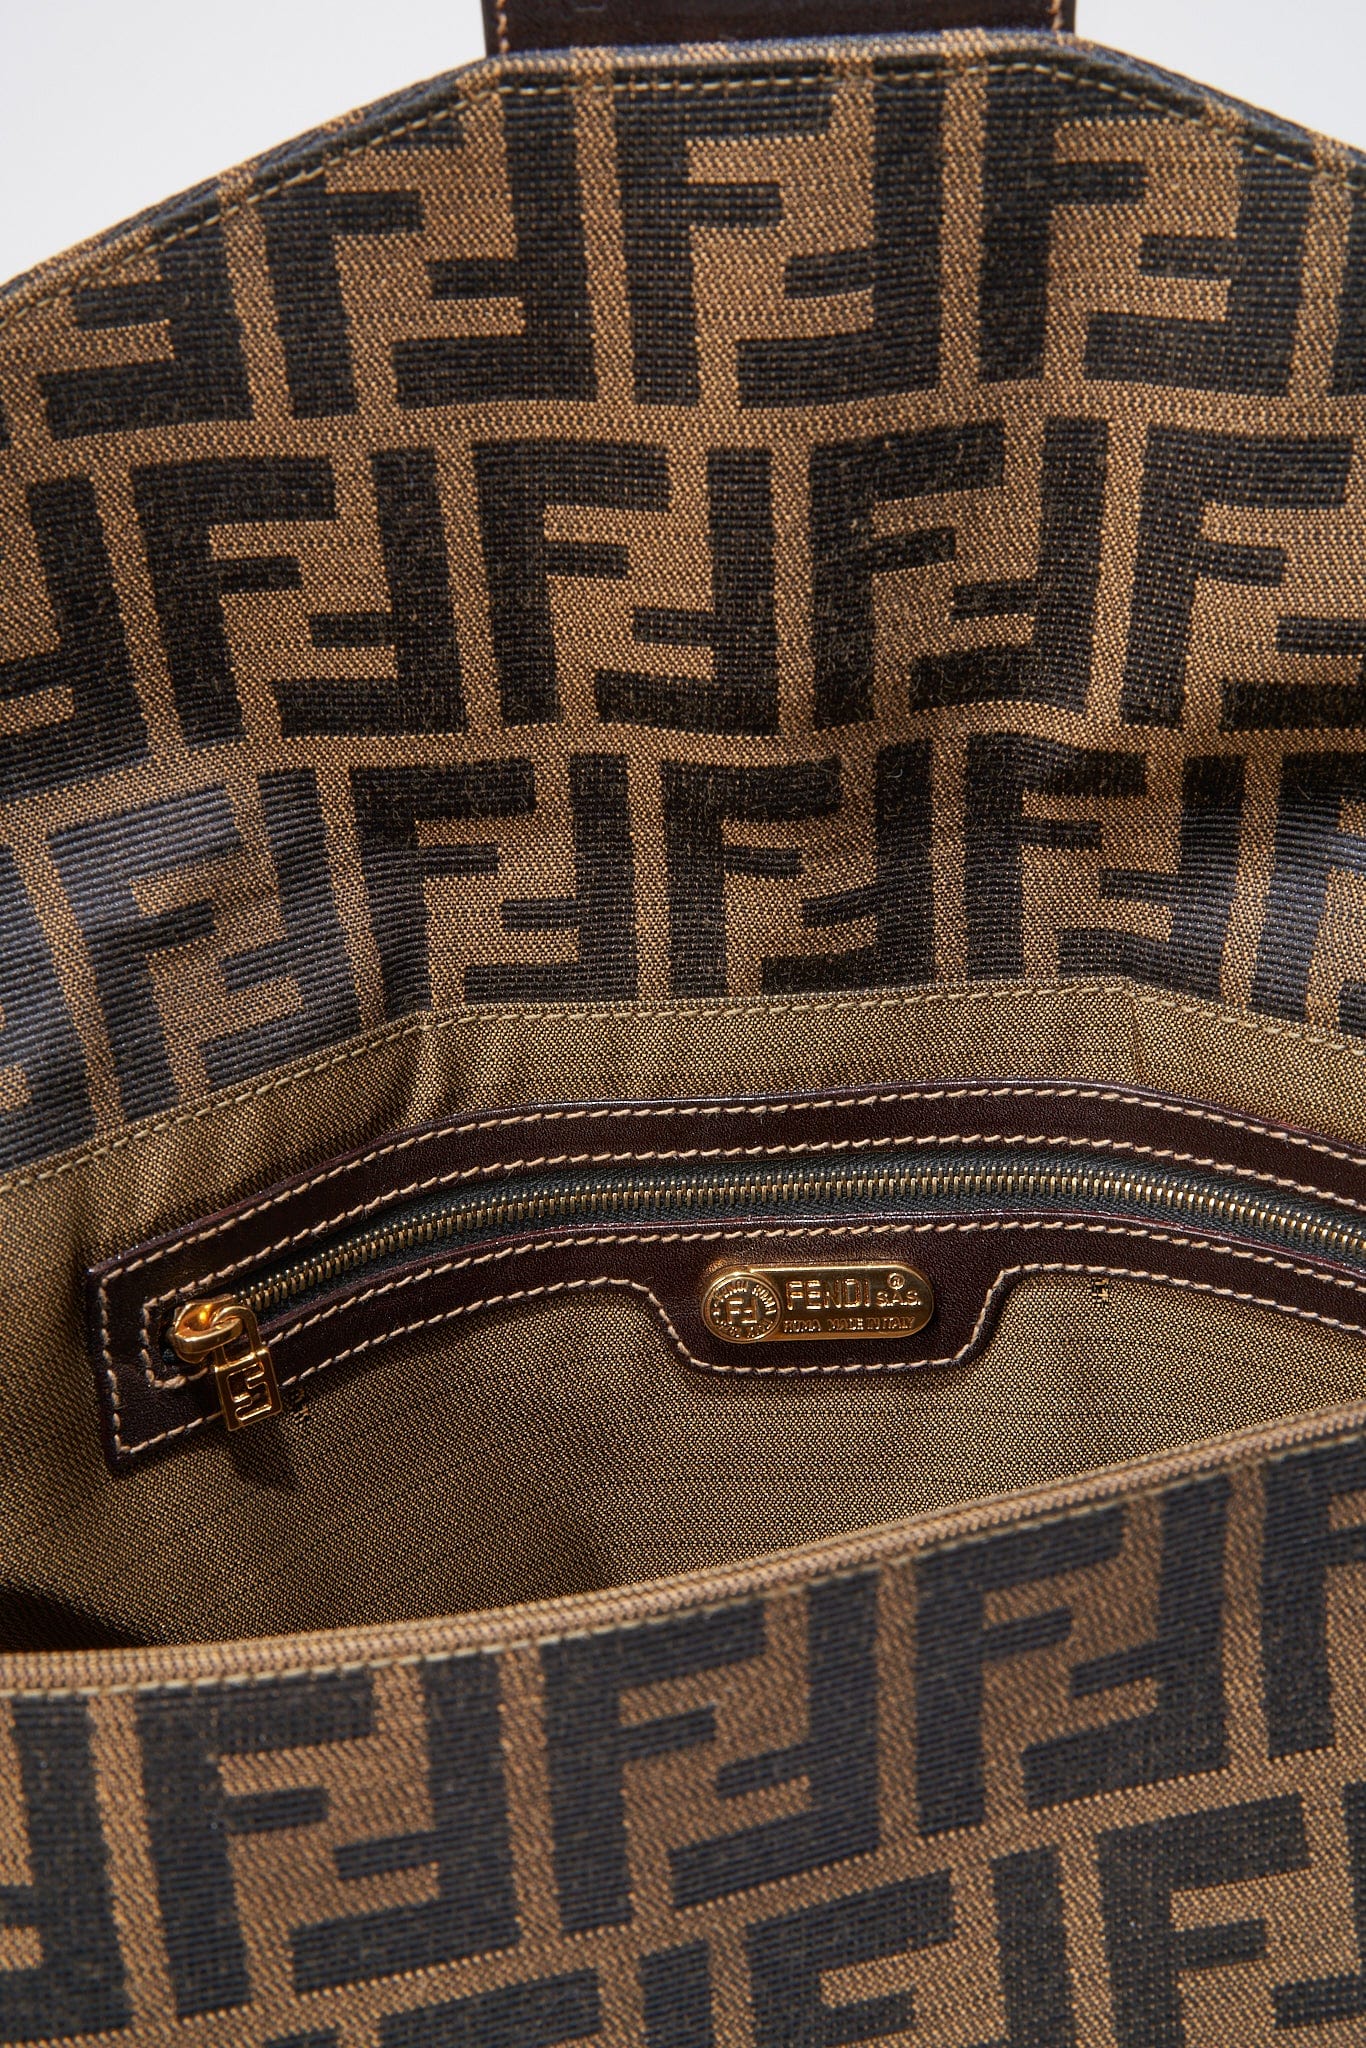 AMORE Vintage on Instagram: Vintage FENDI Zucca tote bag. On